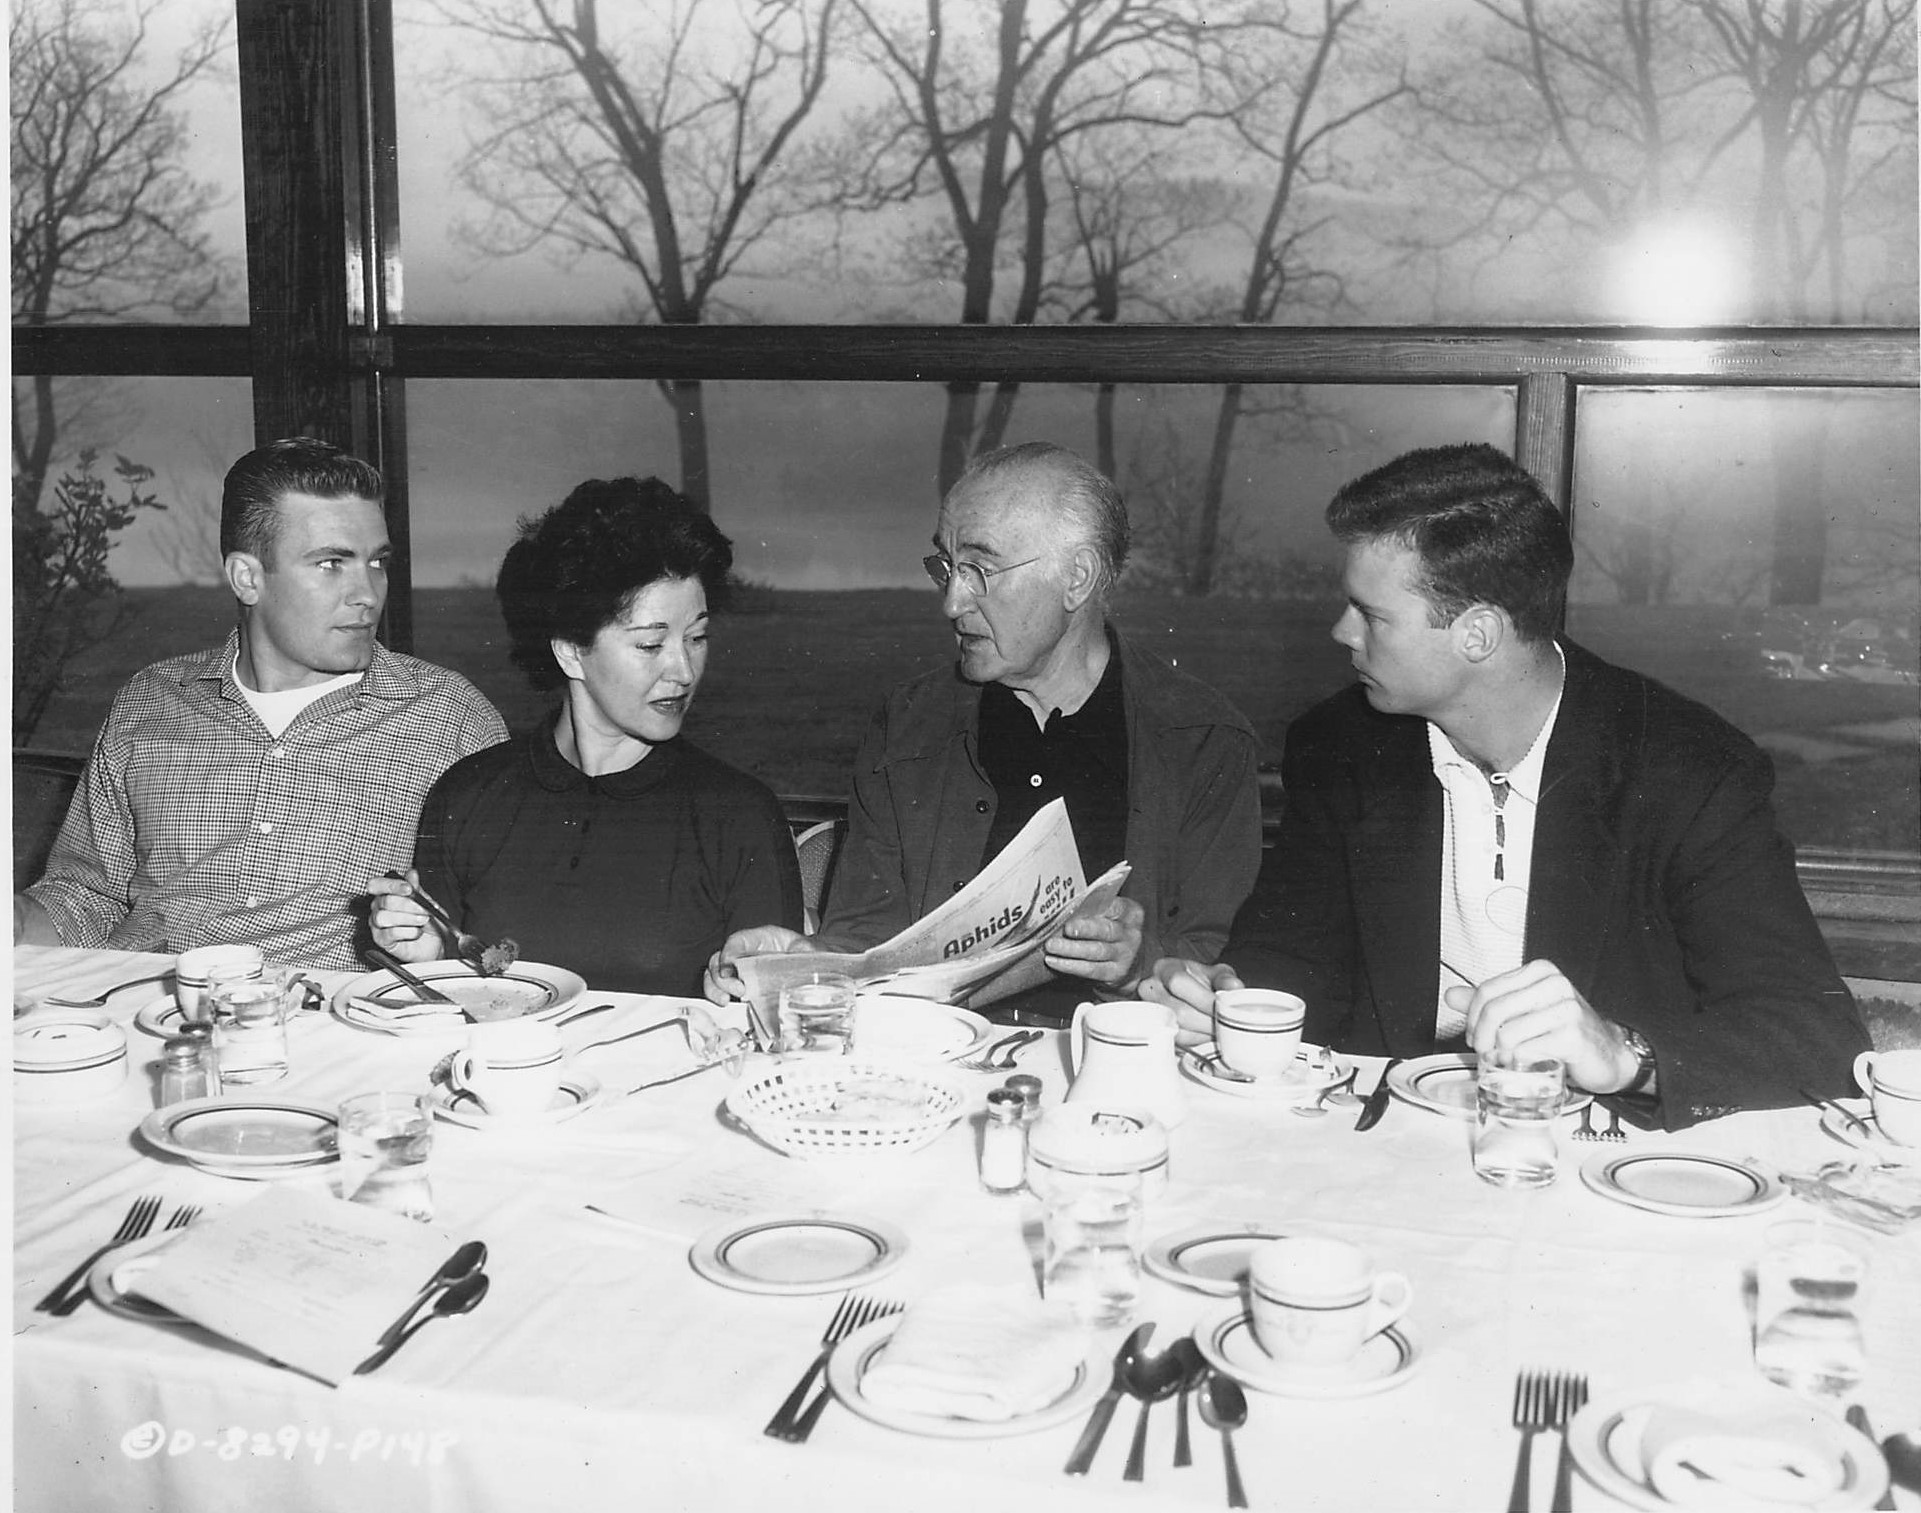  Publicity Photo, Columbia Pictures, West Point, 1954. Bill Leslie, unknown woman, Donald Crisp, Bob Francis 